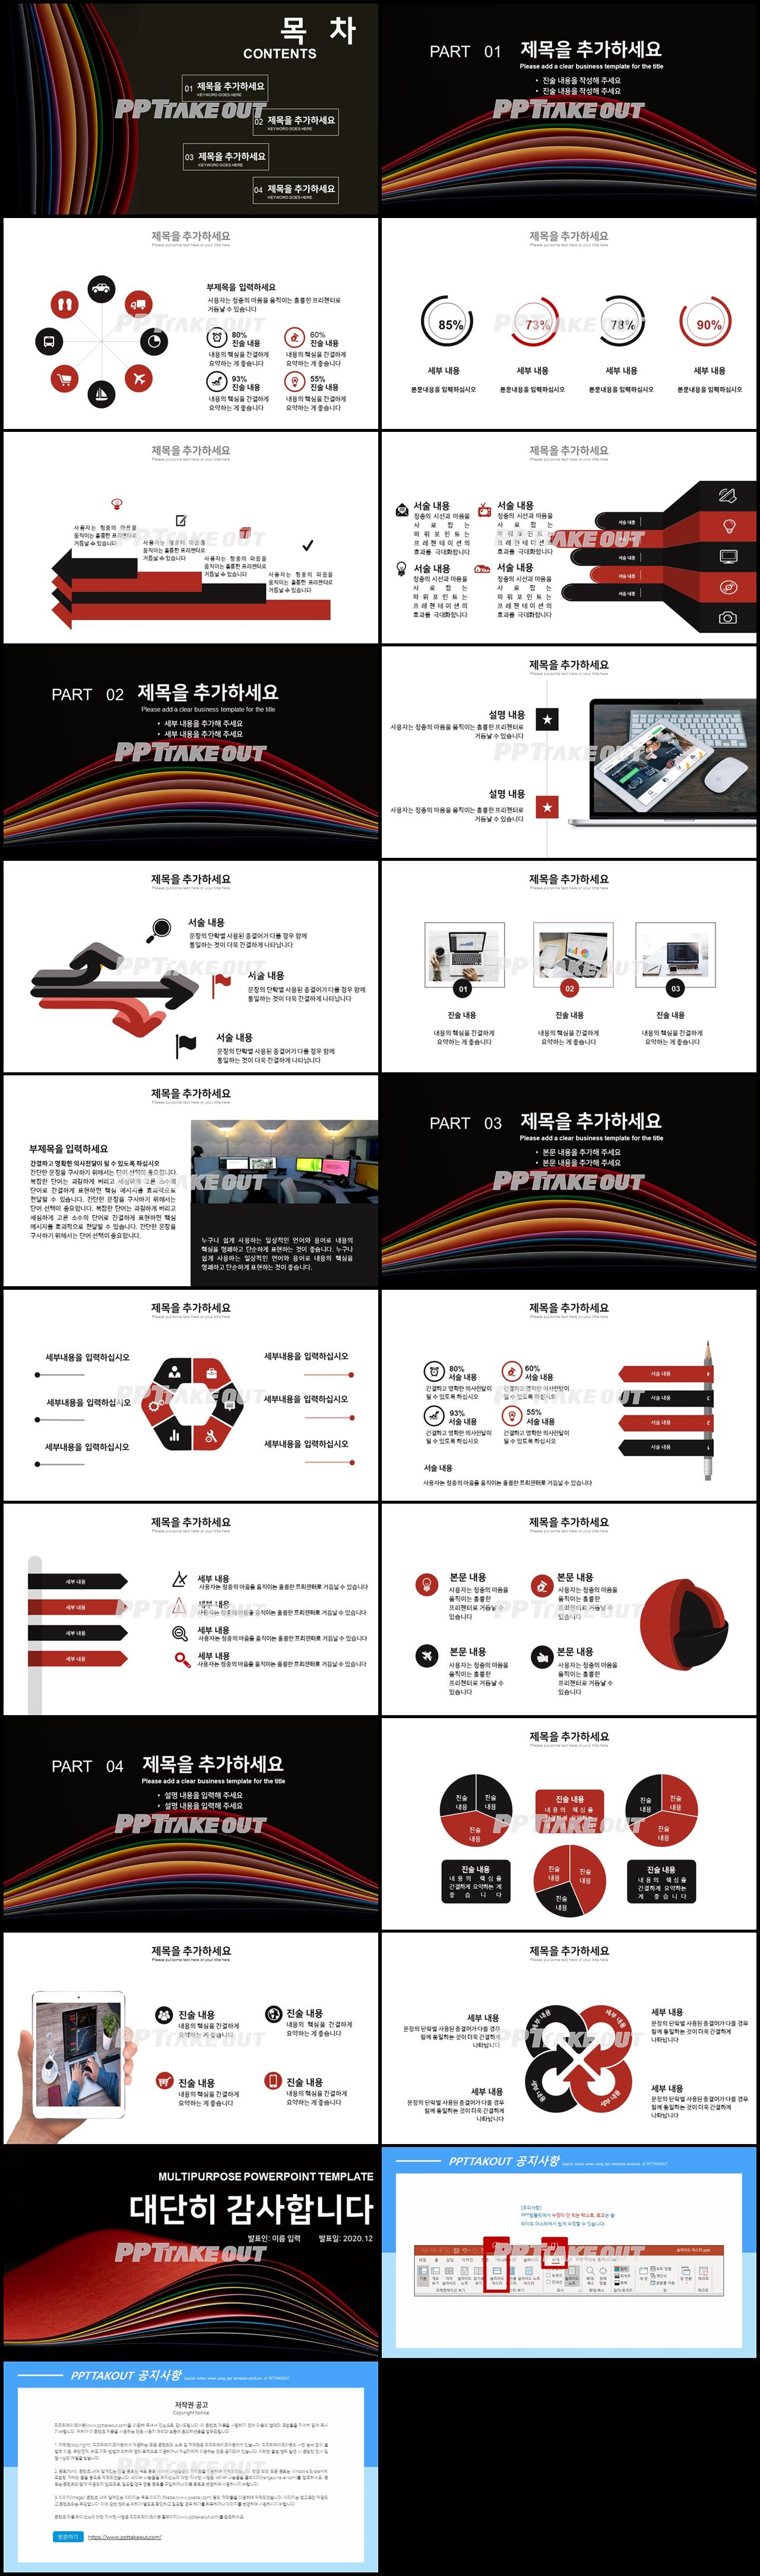 일정관리 붉은색 다크한 고퀄리티 POWERPOINT테마 제작 상세보기